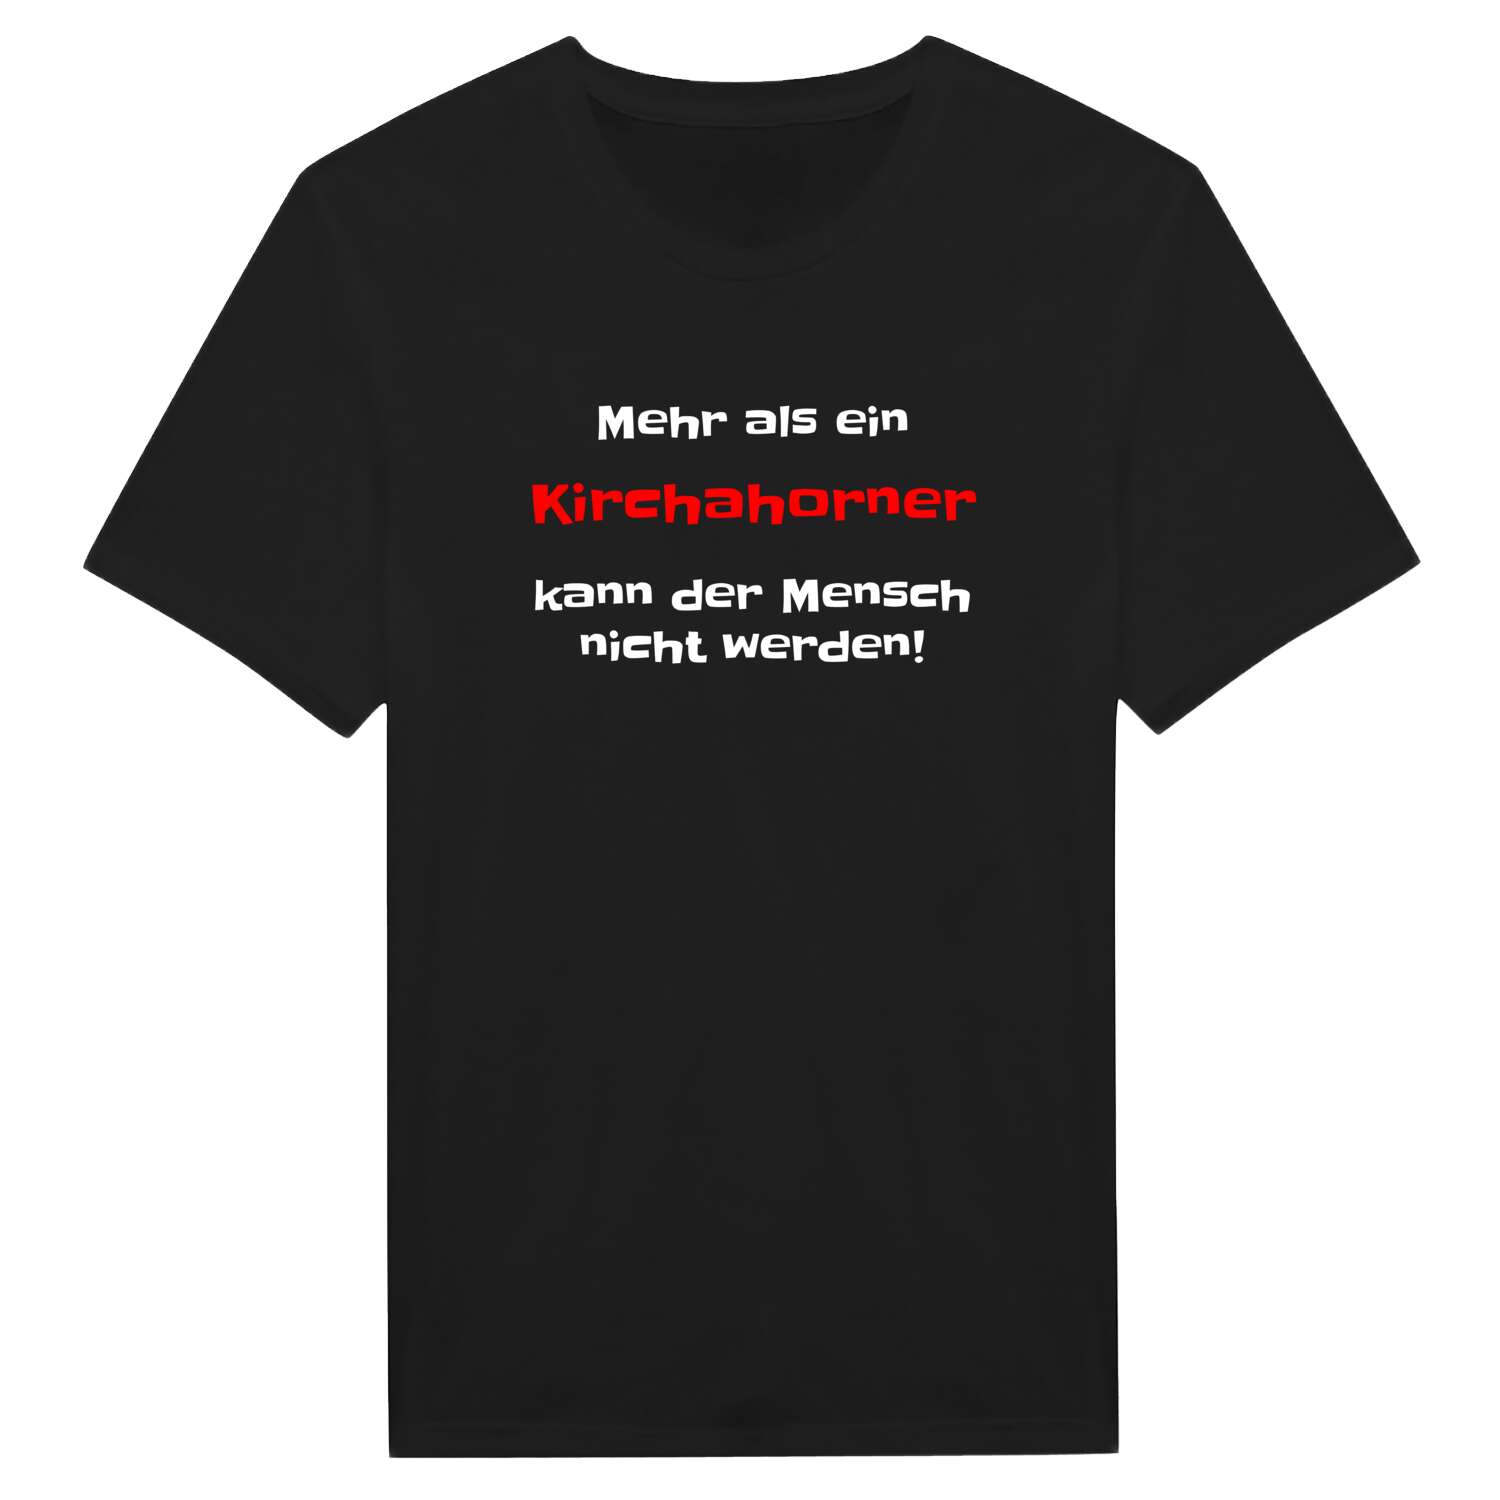 Kirchahorn T-Shirt »Mehr als ein«